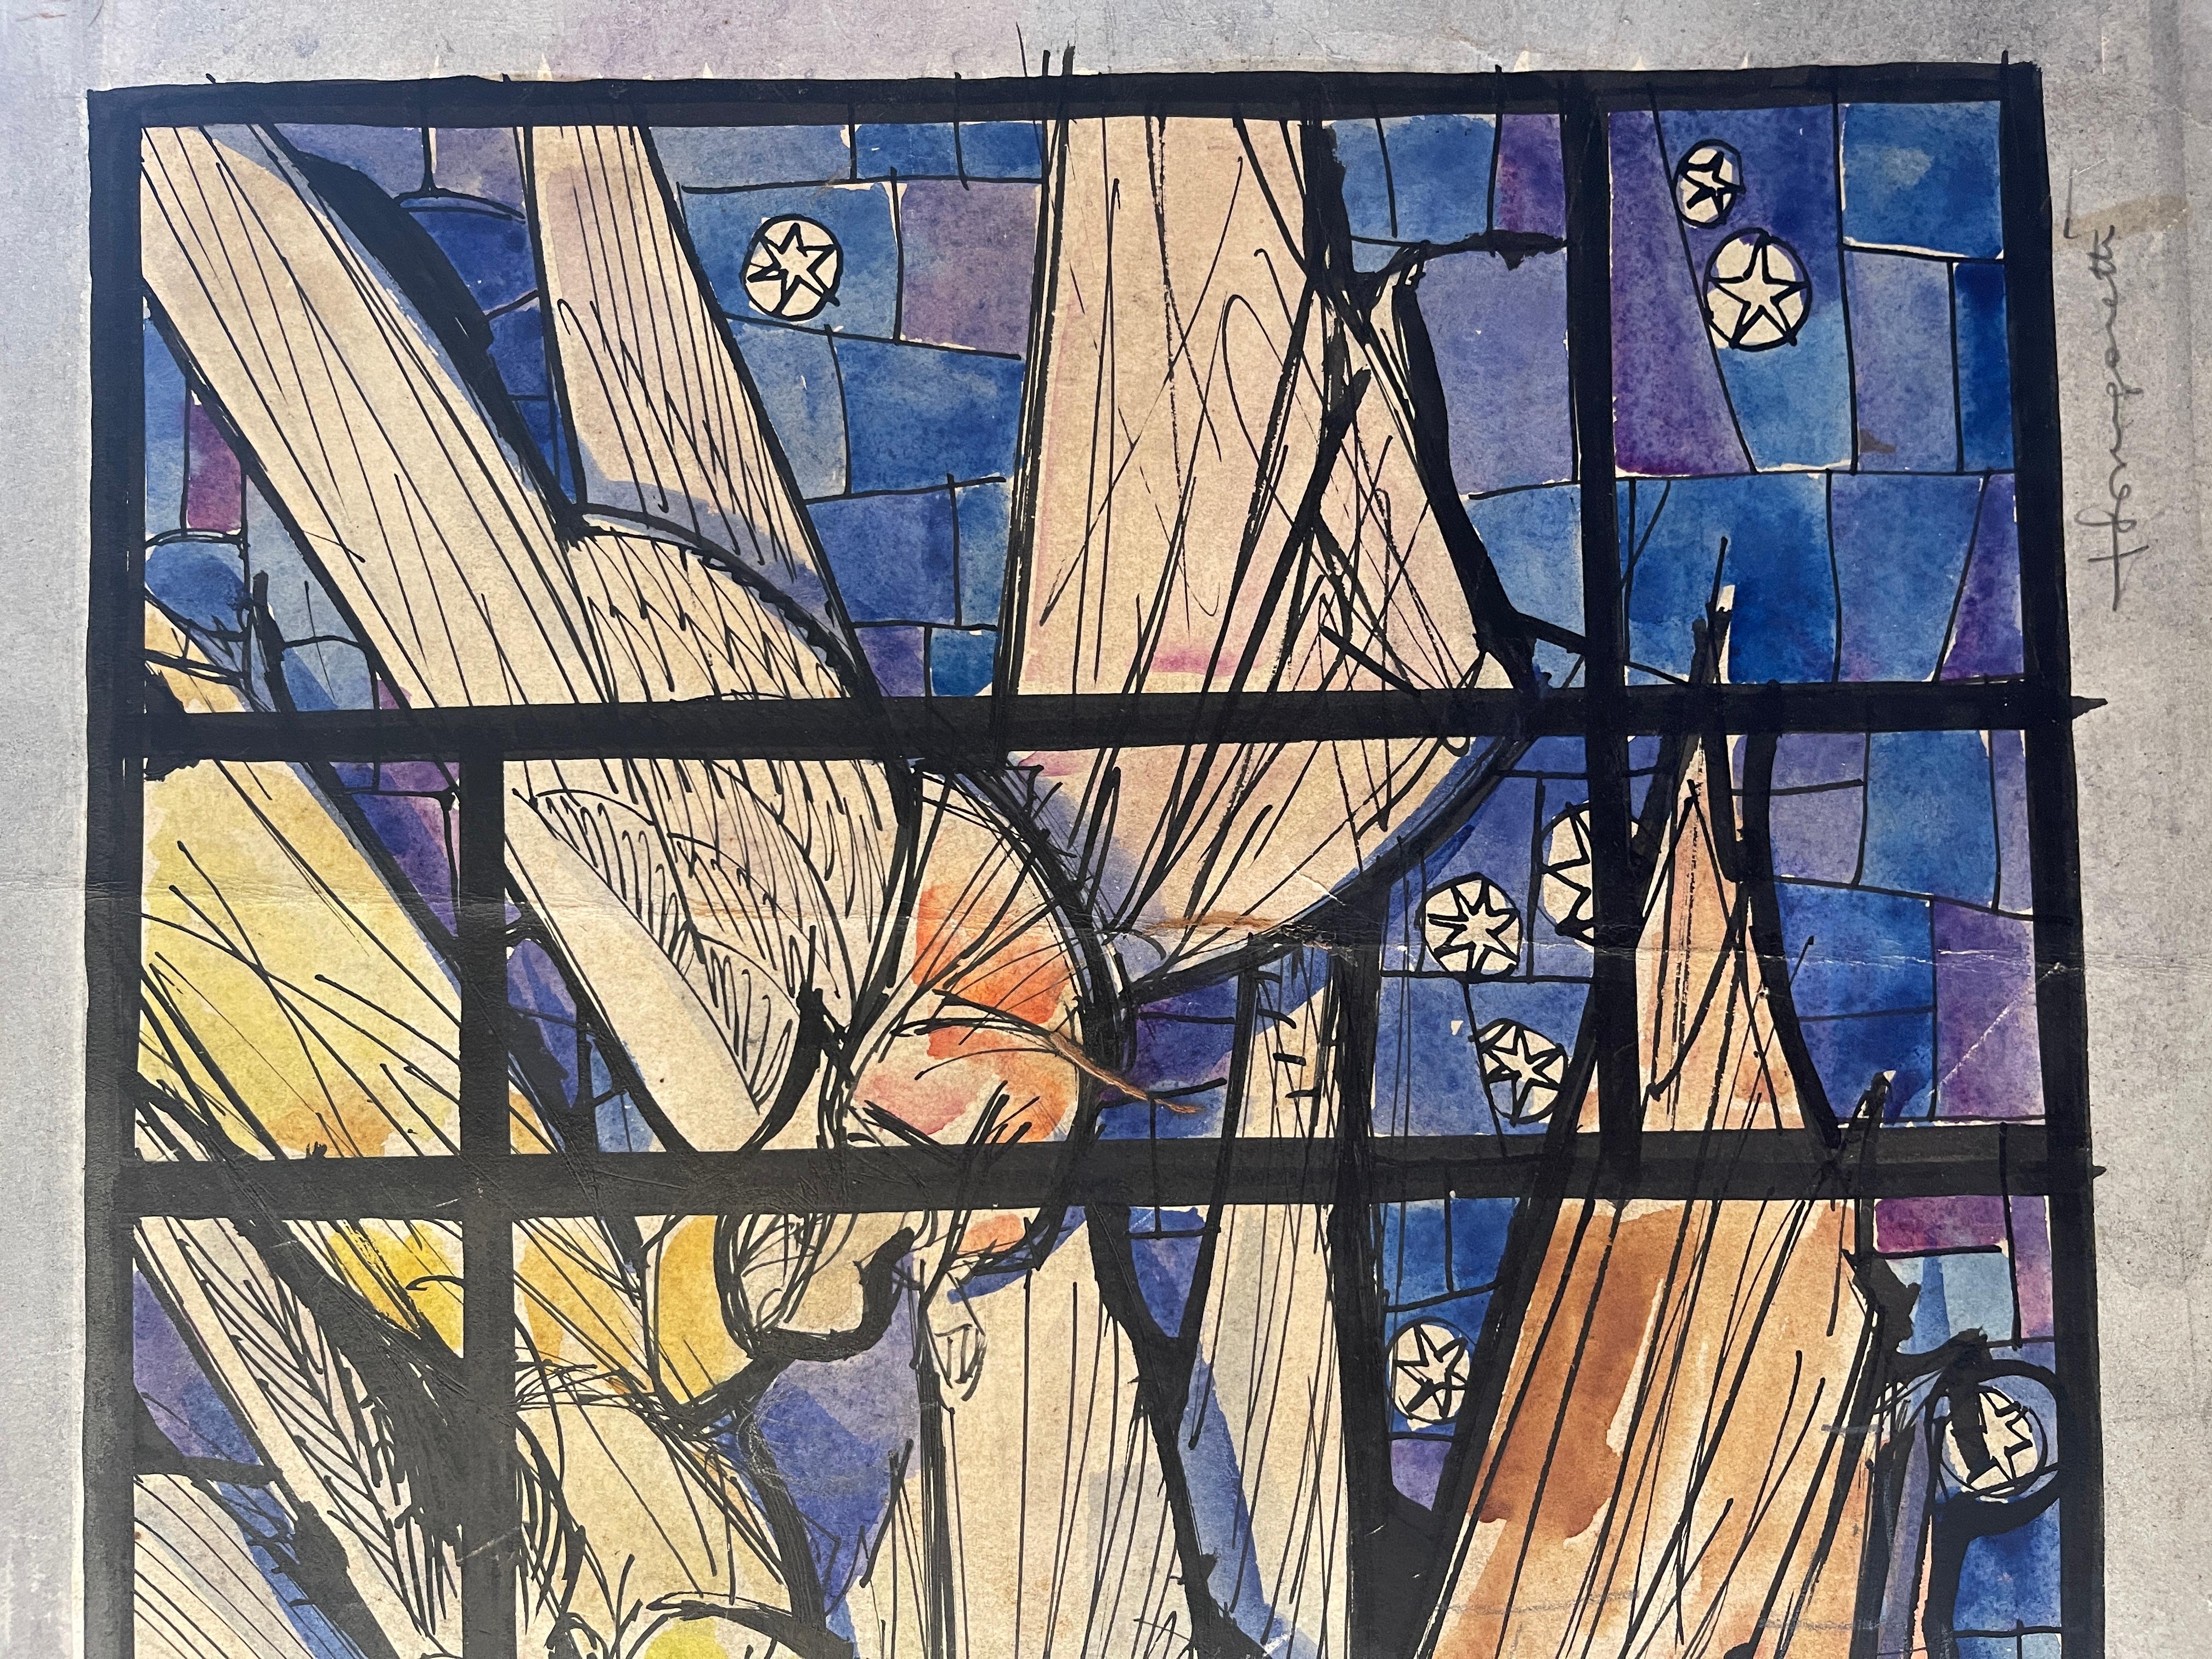 Peint sur carton, Anges en prière, Longaretti
Peinture complexe réalisée sur carton représentant un groupe d'Anges en prière, le tableau simule cette représentation comme si elle était peinte sur la fenêtre d'une église, mettant en évidence la